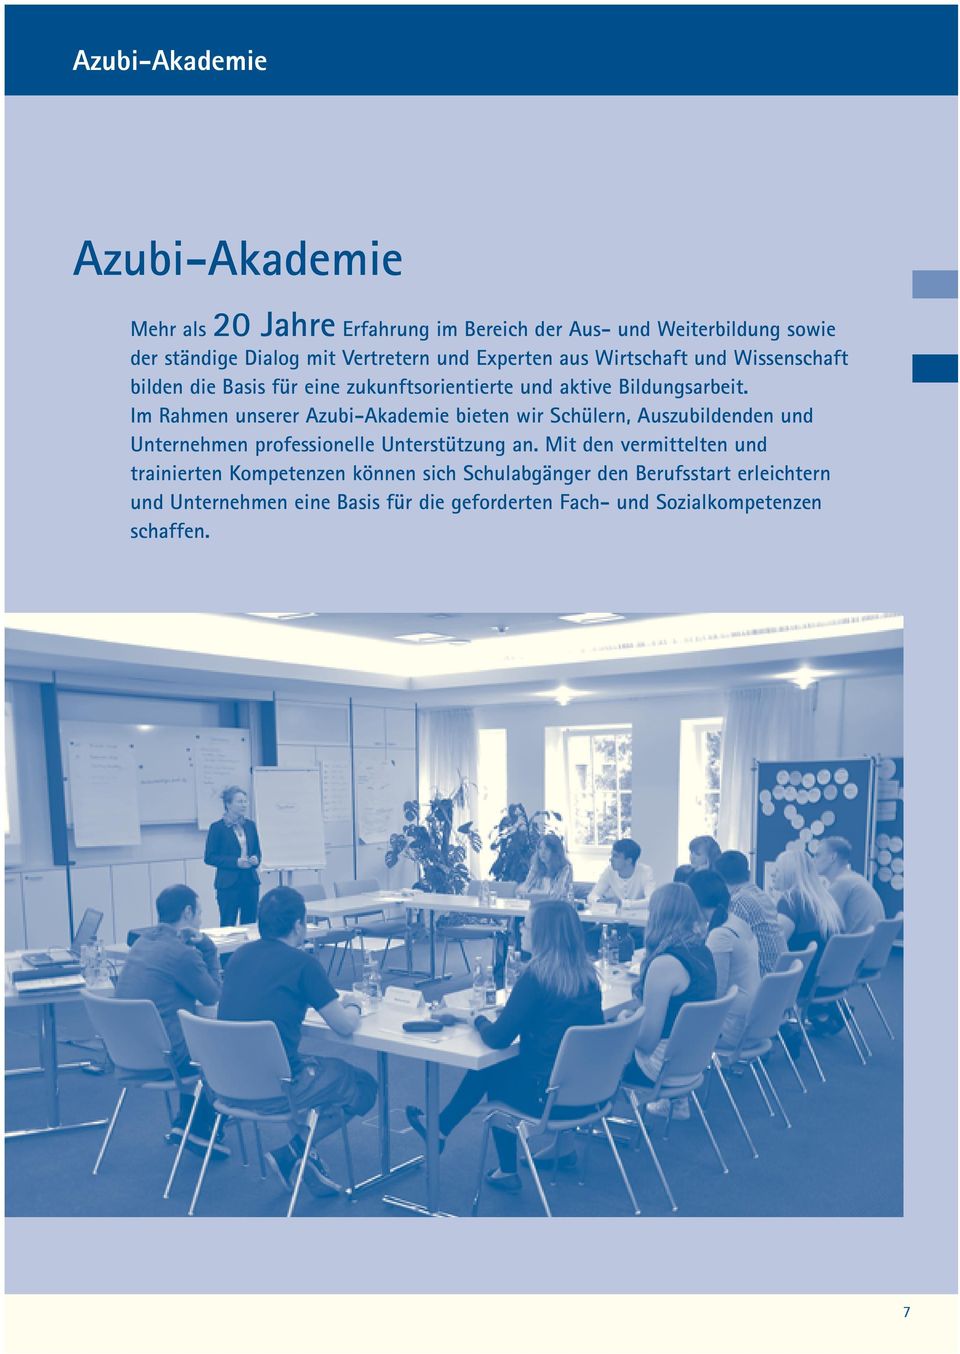 Im Rahmen unserer Azubi-Akademie bieten wir Schülern, Auszubildenden und Unternehmen professionelle Unterstützung an.